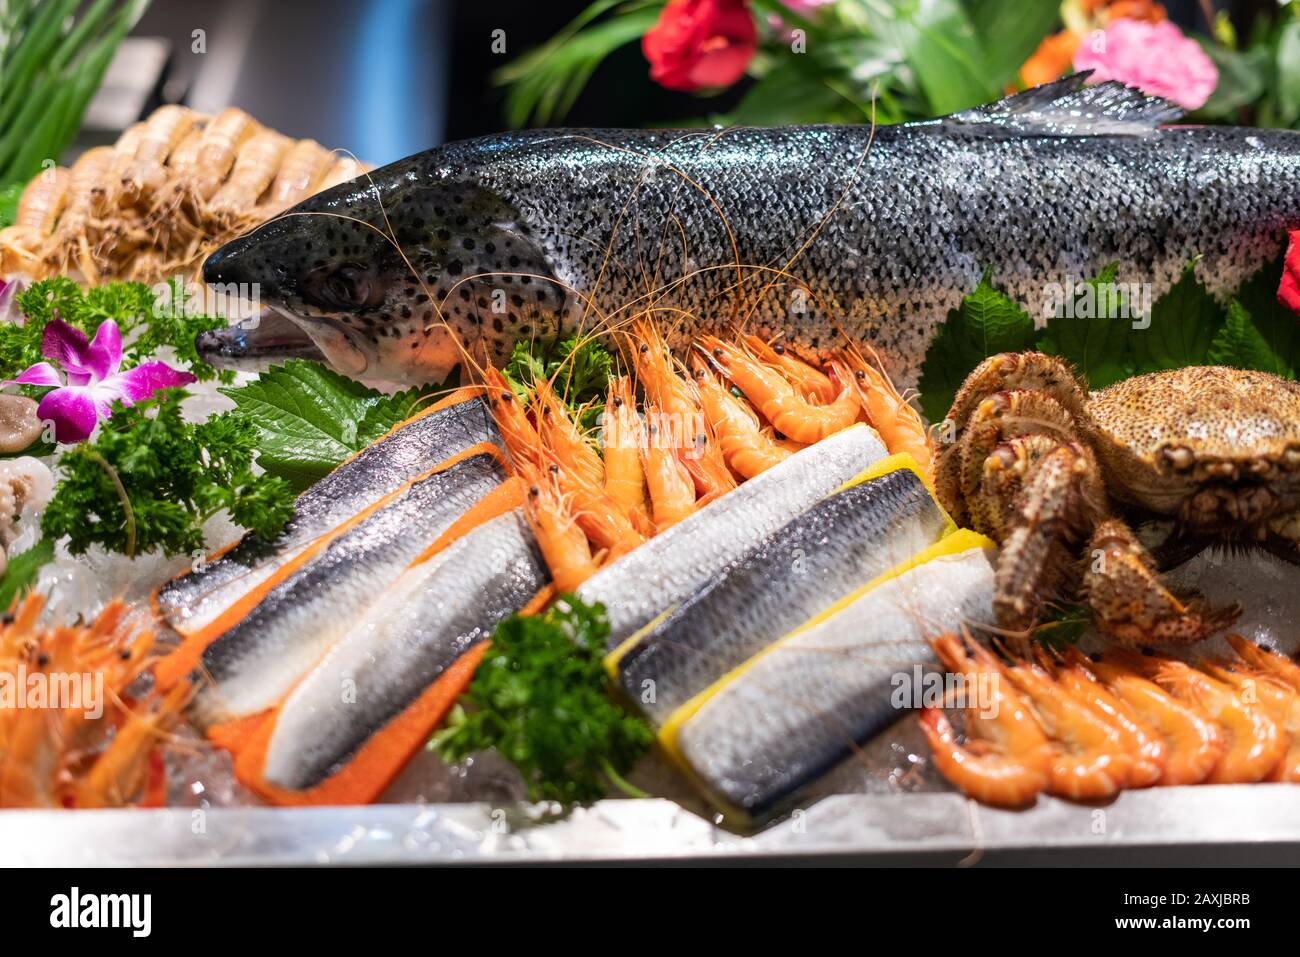 Dîner-buffet avec variété de fruits de mer dans un hôtel de luxe. Banque D'Images